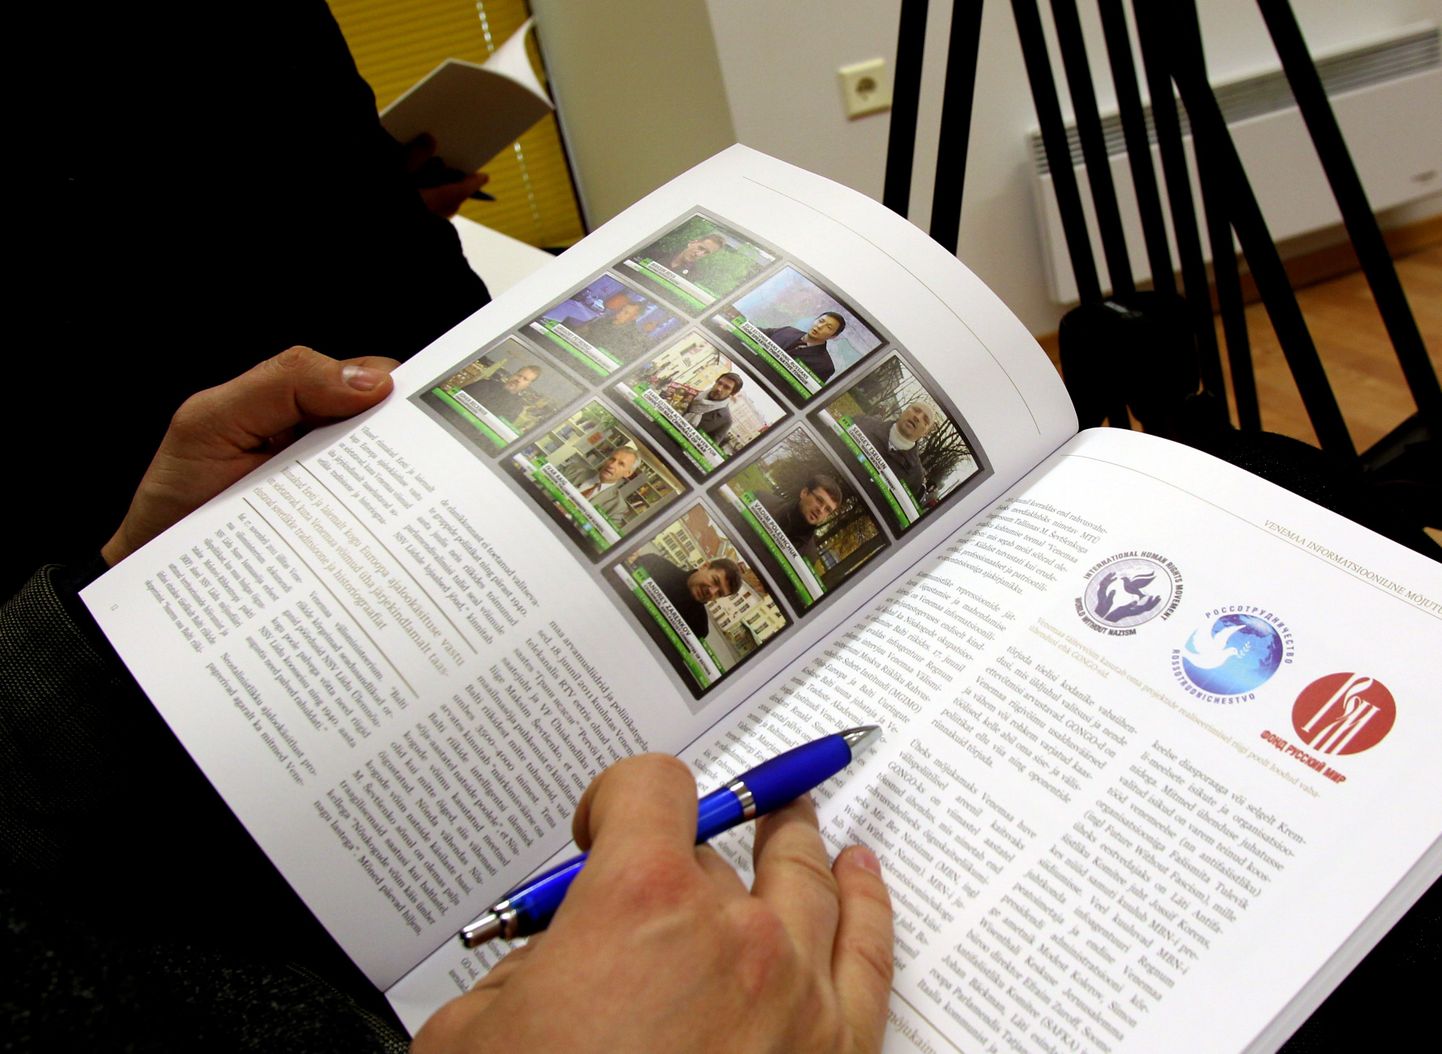 Kapo aastaraamat toob väljavõtteid telekanali RT Eestist rääkivatest lugudest.